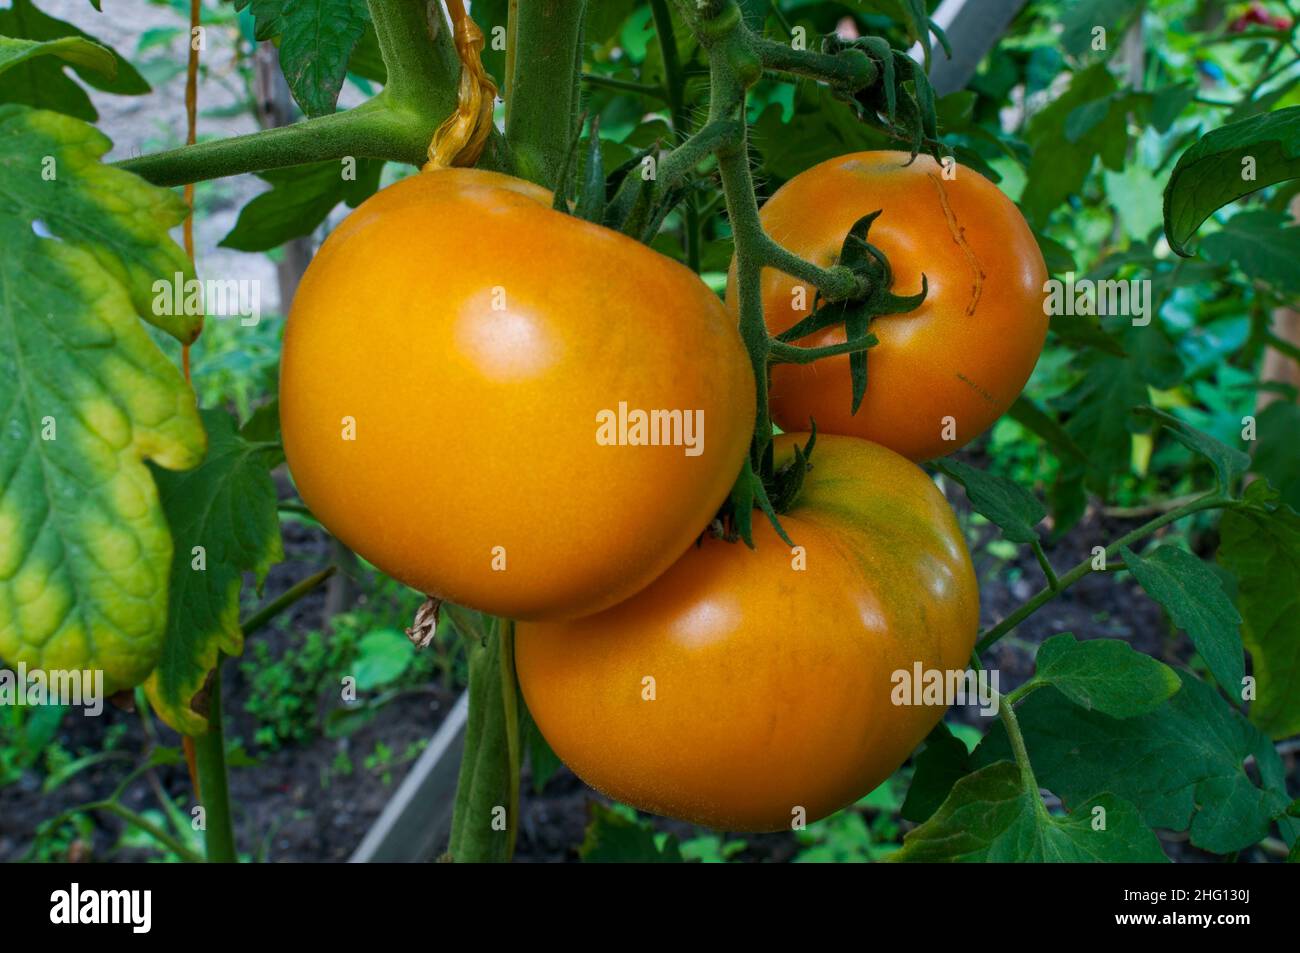 Les tomates jaunes poussent dans des petits pains dans le jardin Banque D'Images